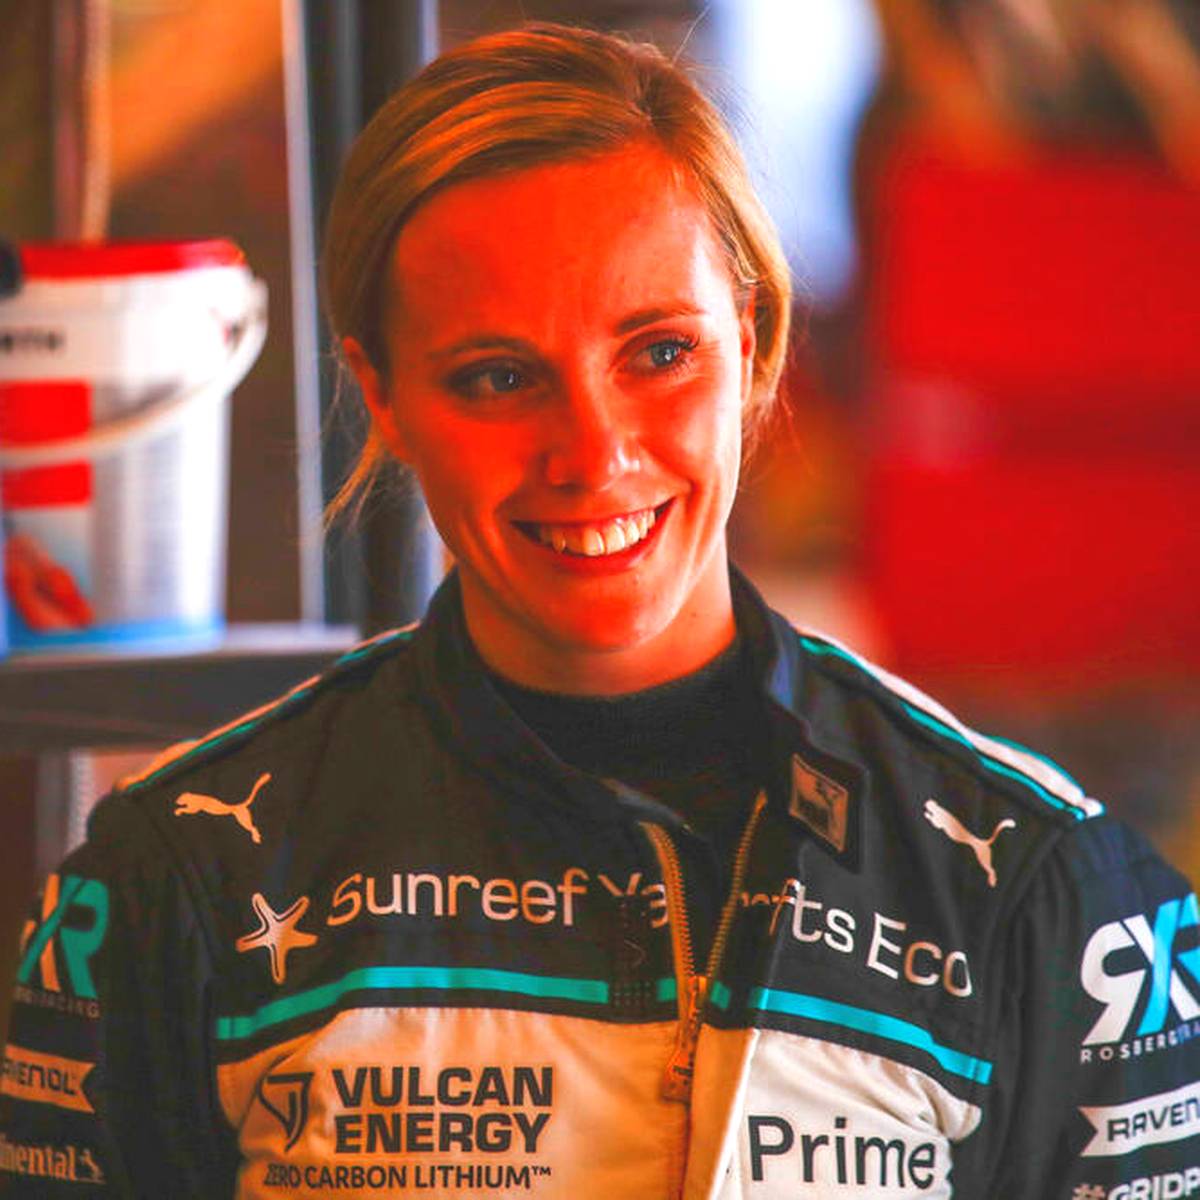 Die schnellste Lady der Extreme E! Mikaela Ahlin-Kottulinsky brilliert im Team von Nico Rosberg